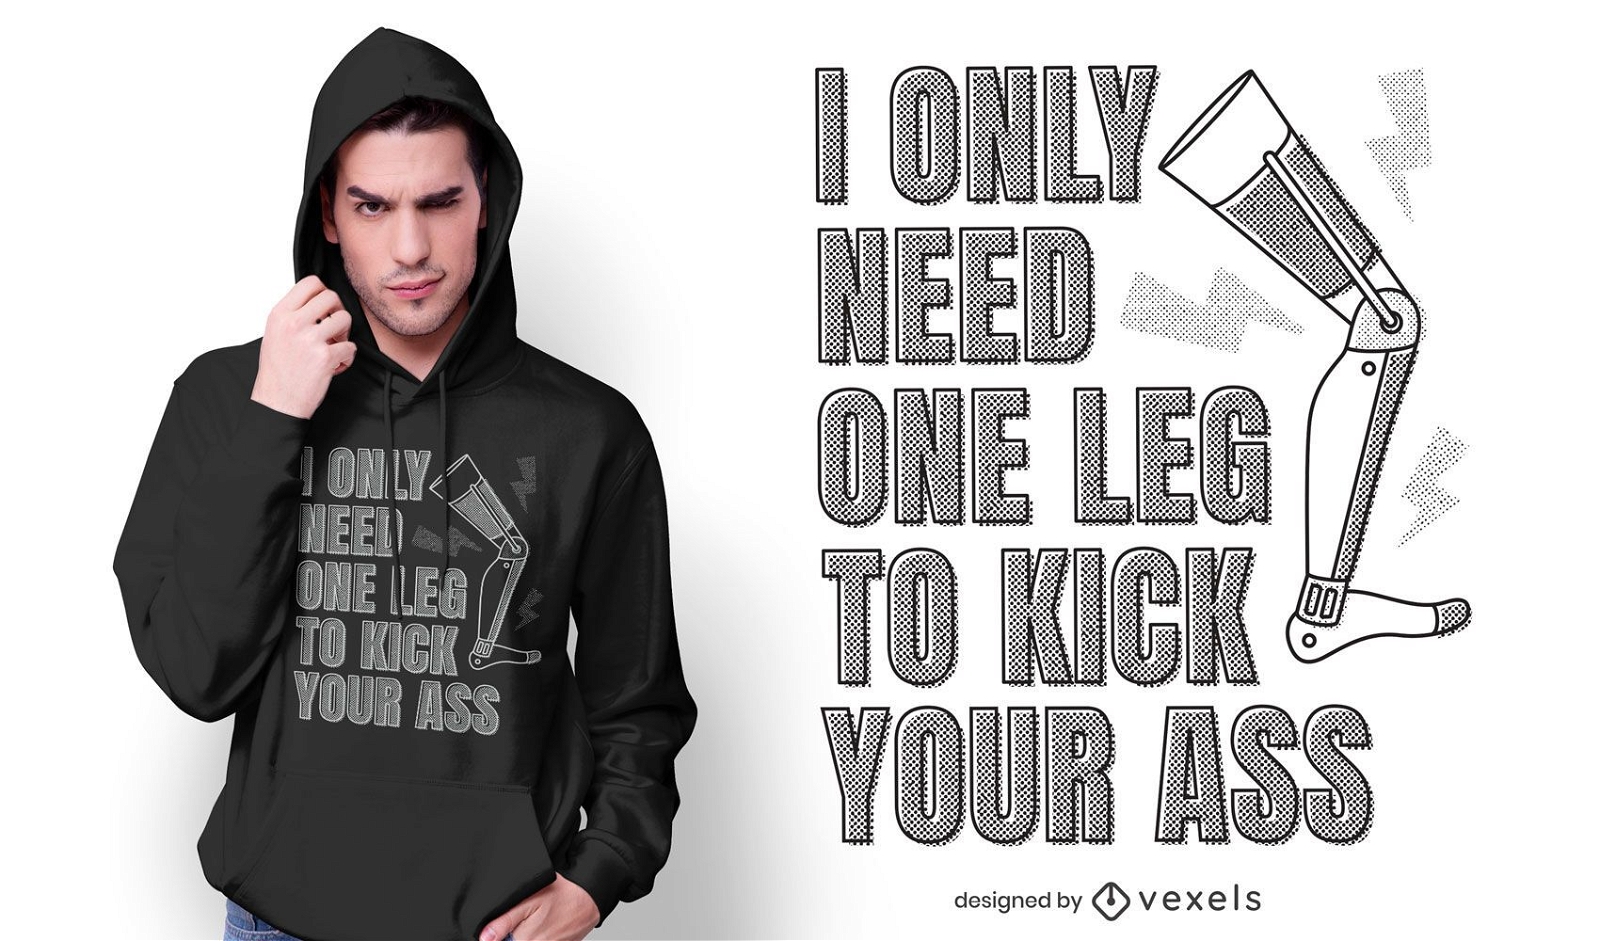 One leg kickass t-shirt design